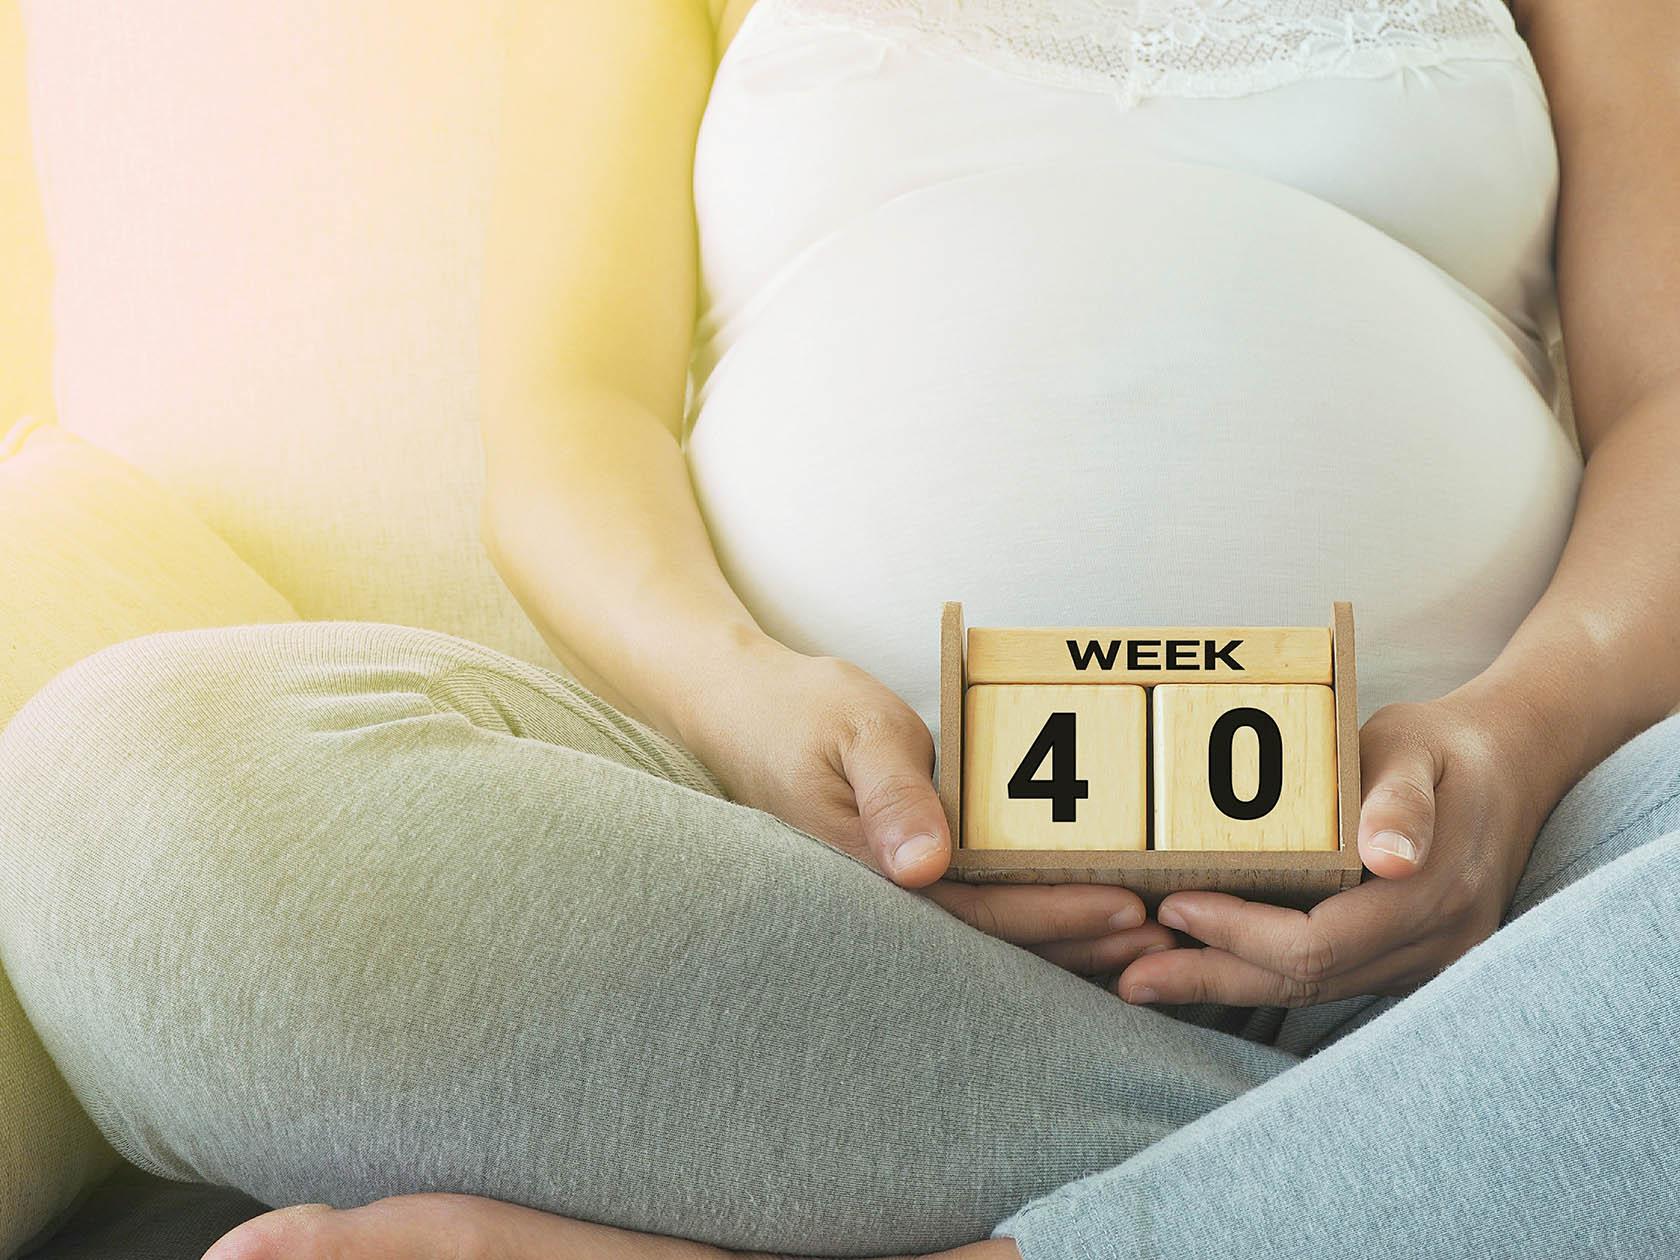 37-я неделя беременности для ребенка